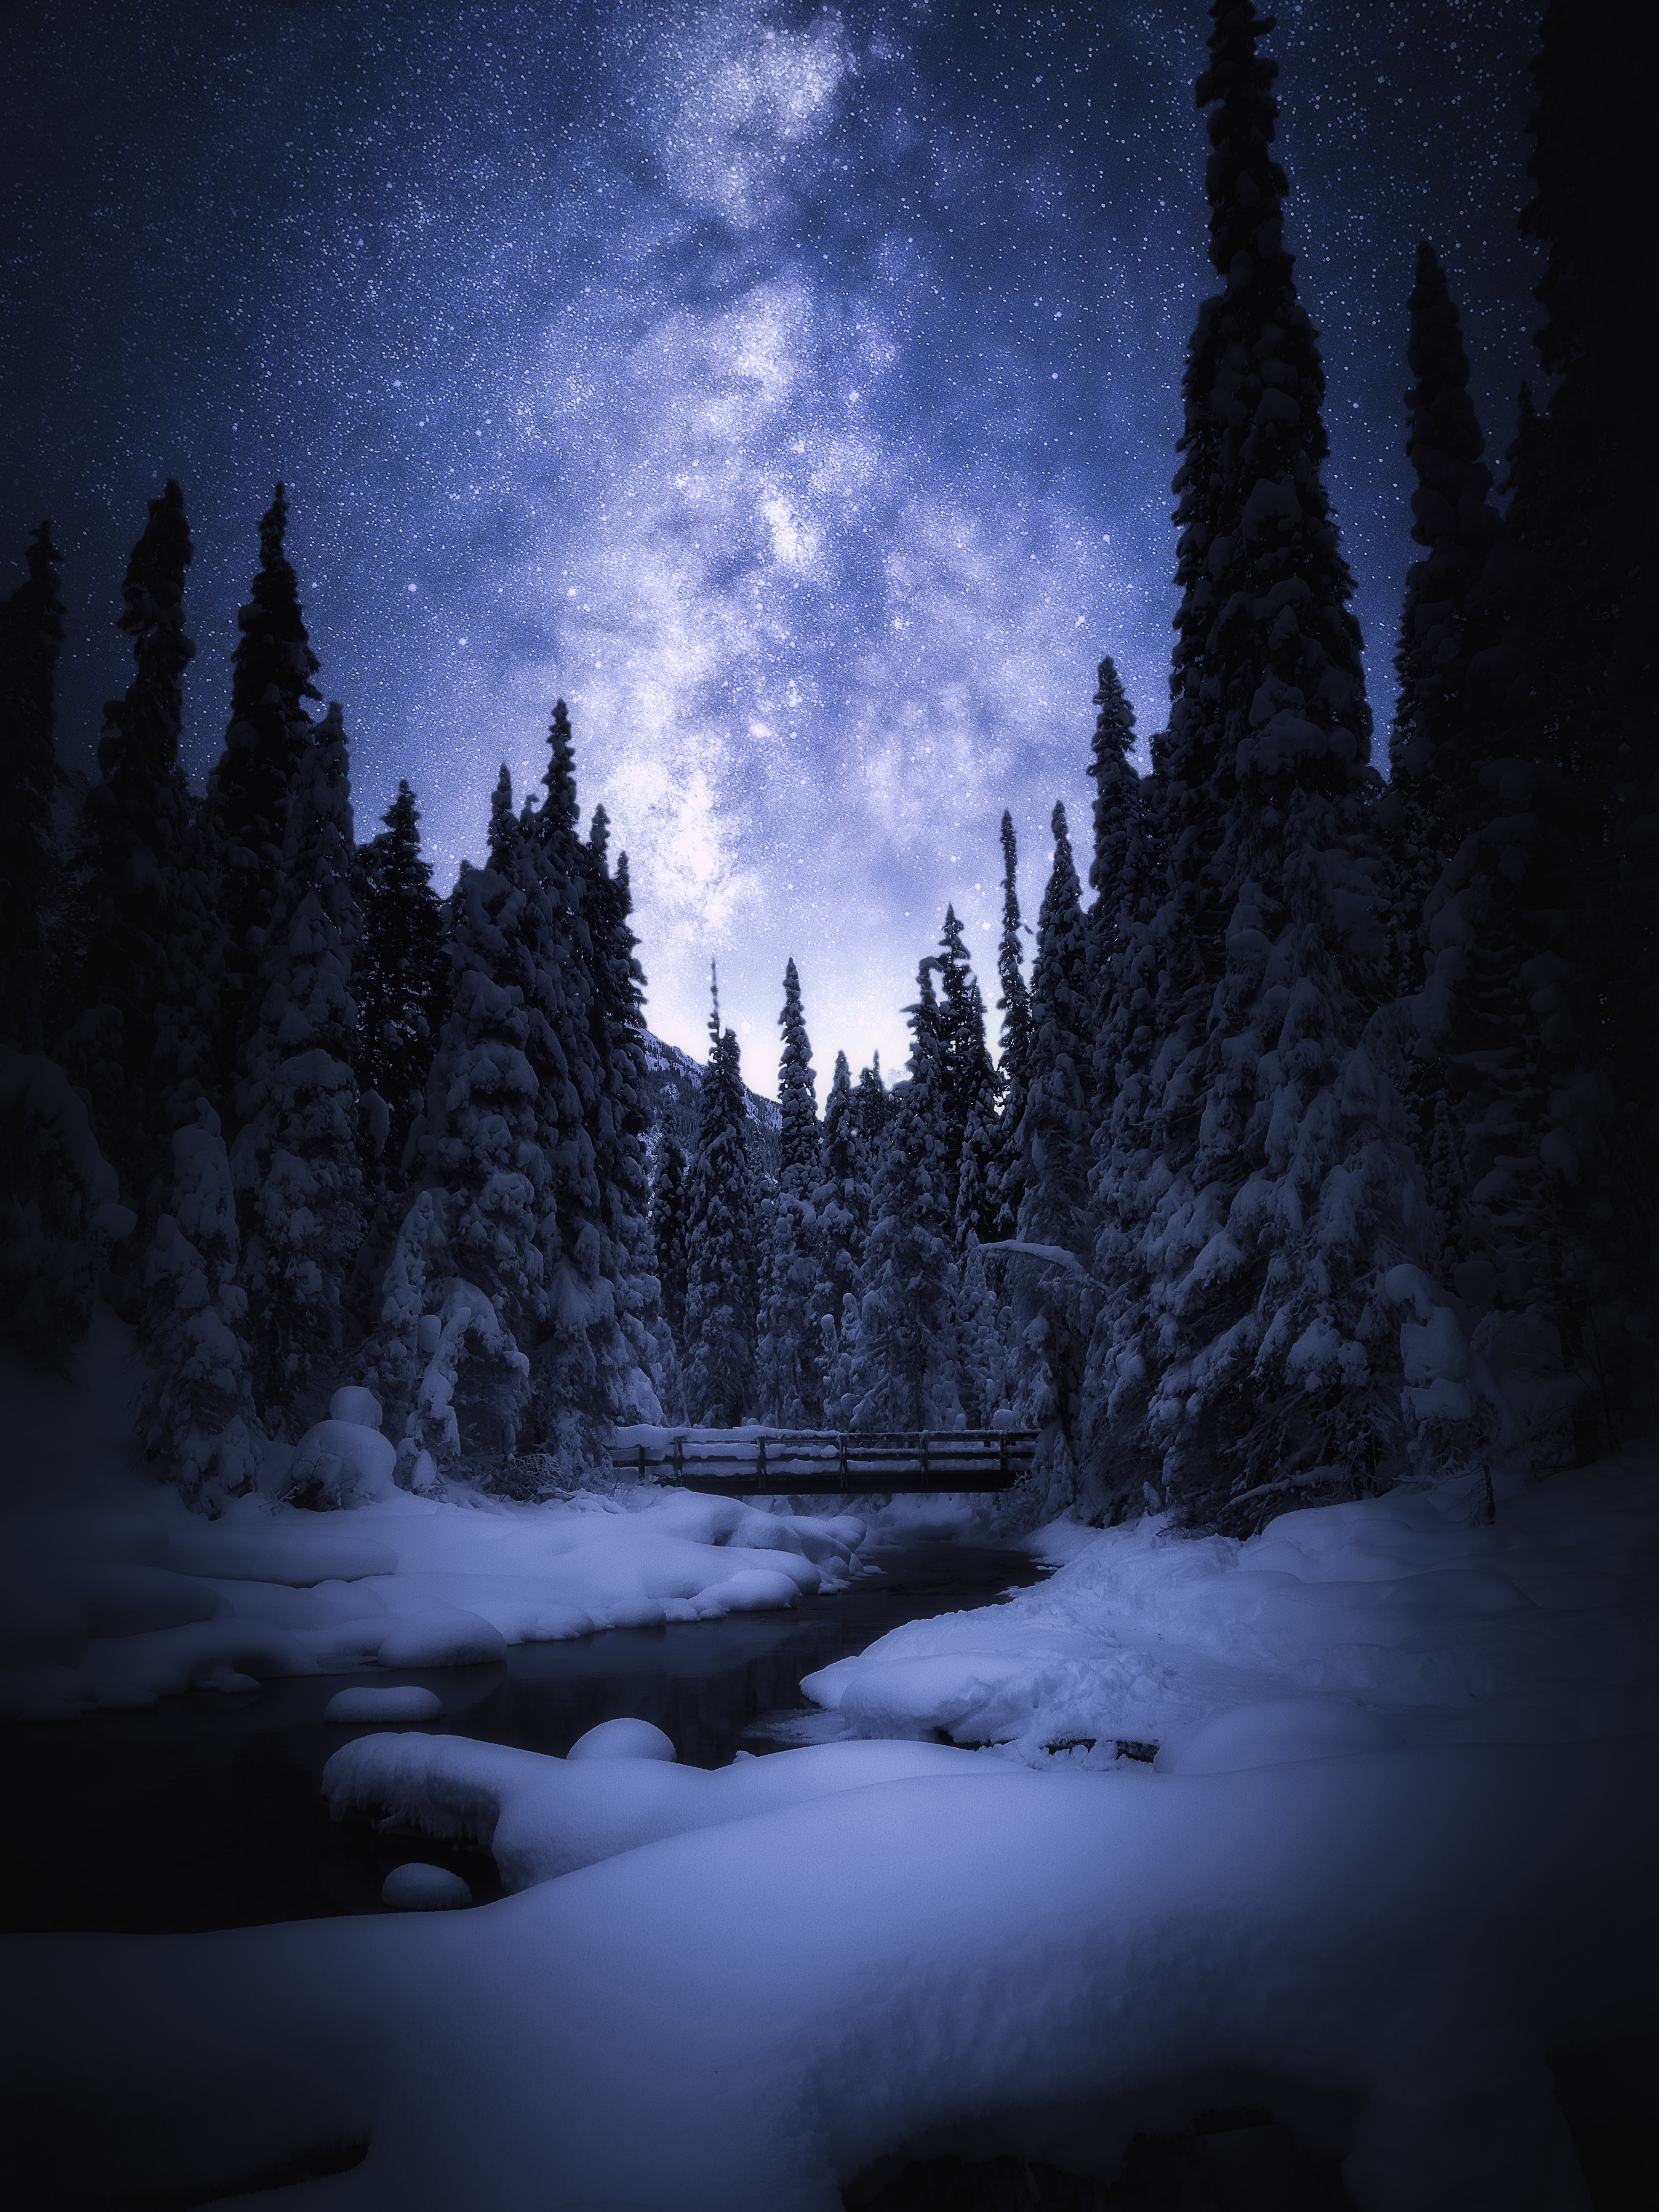 Winter Night Images  Free Download on Freepik